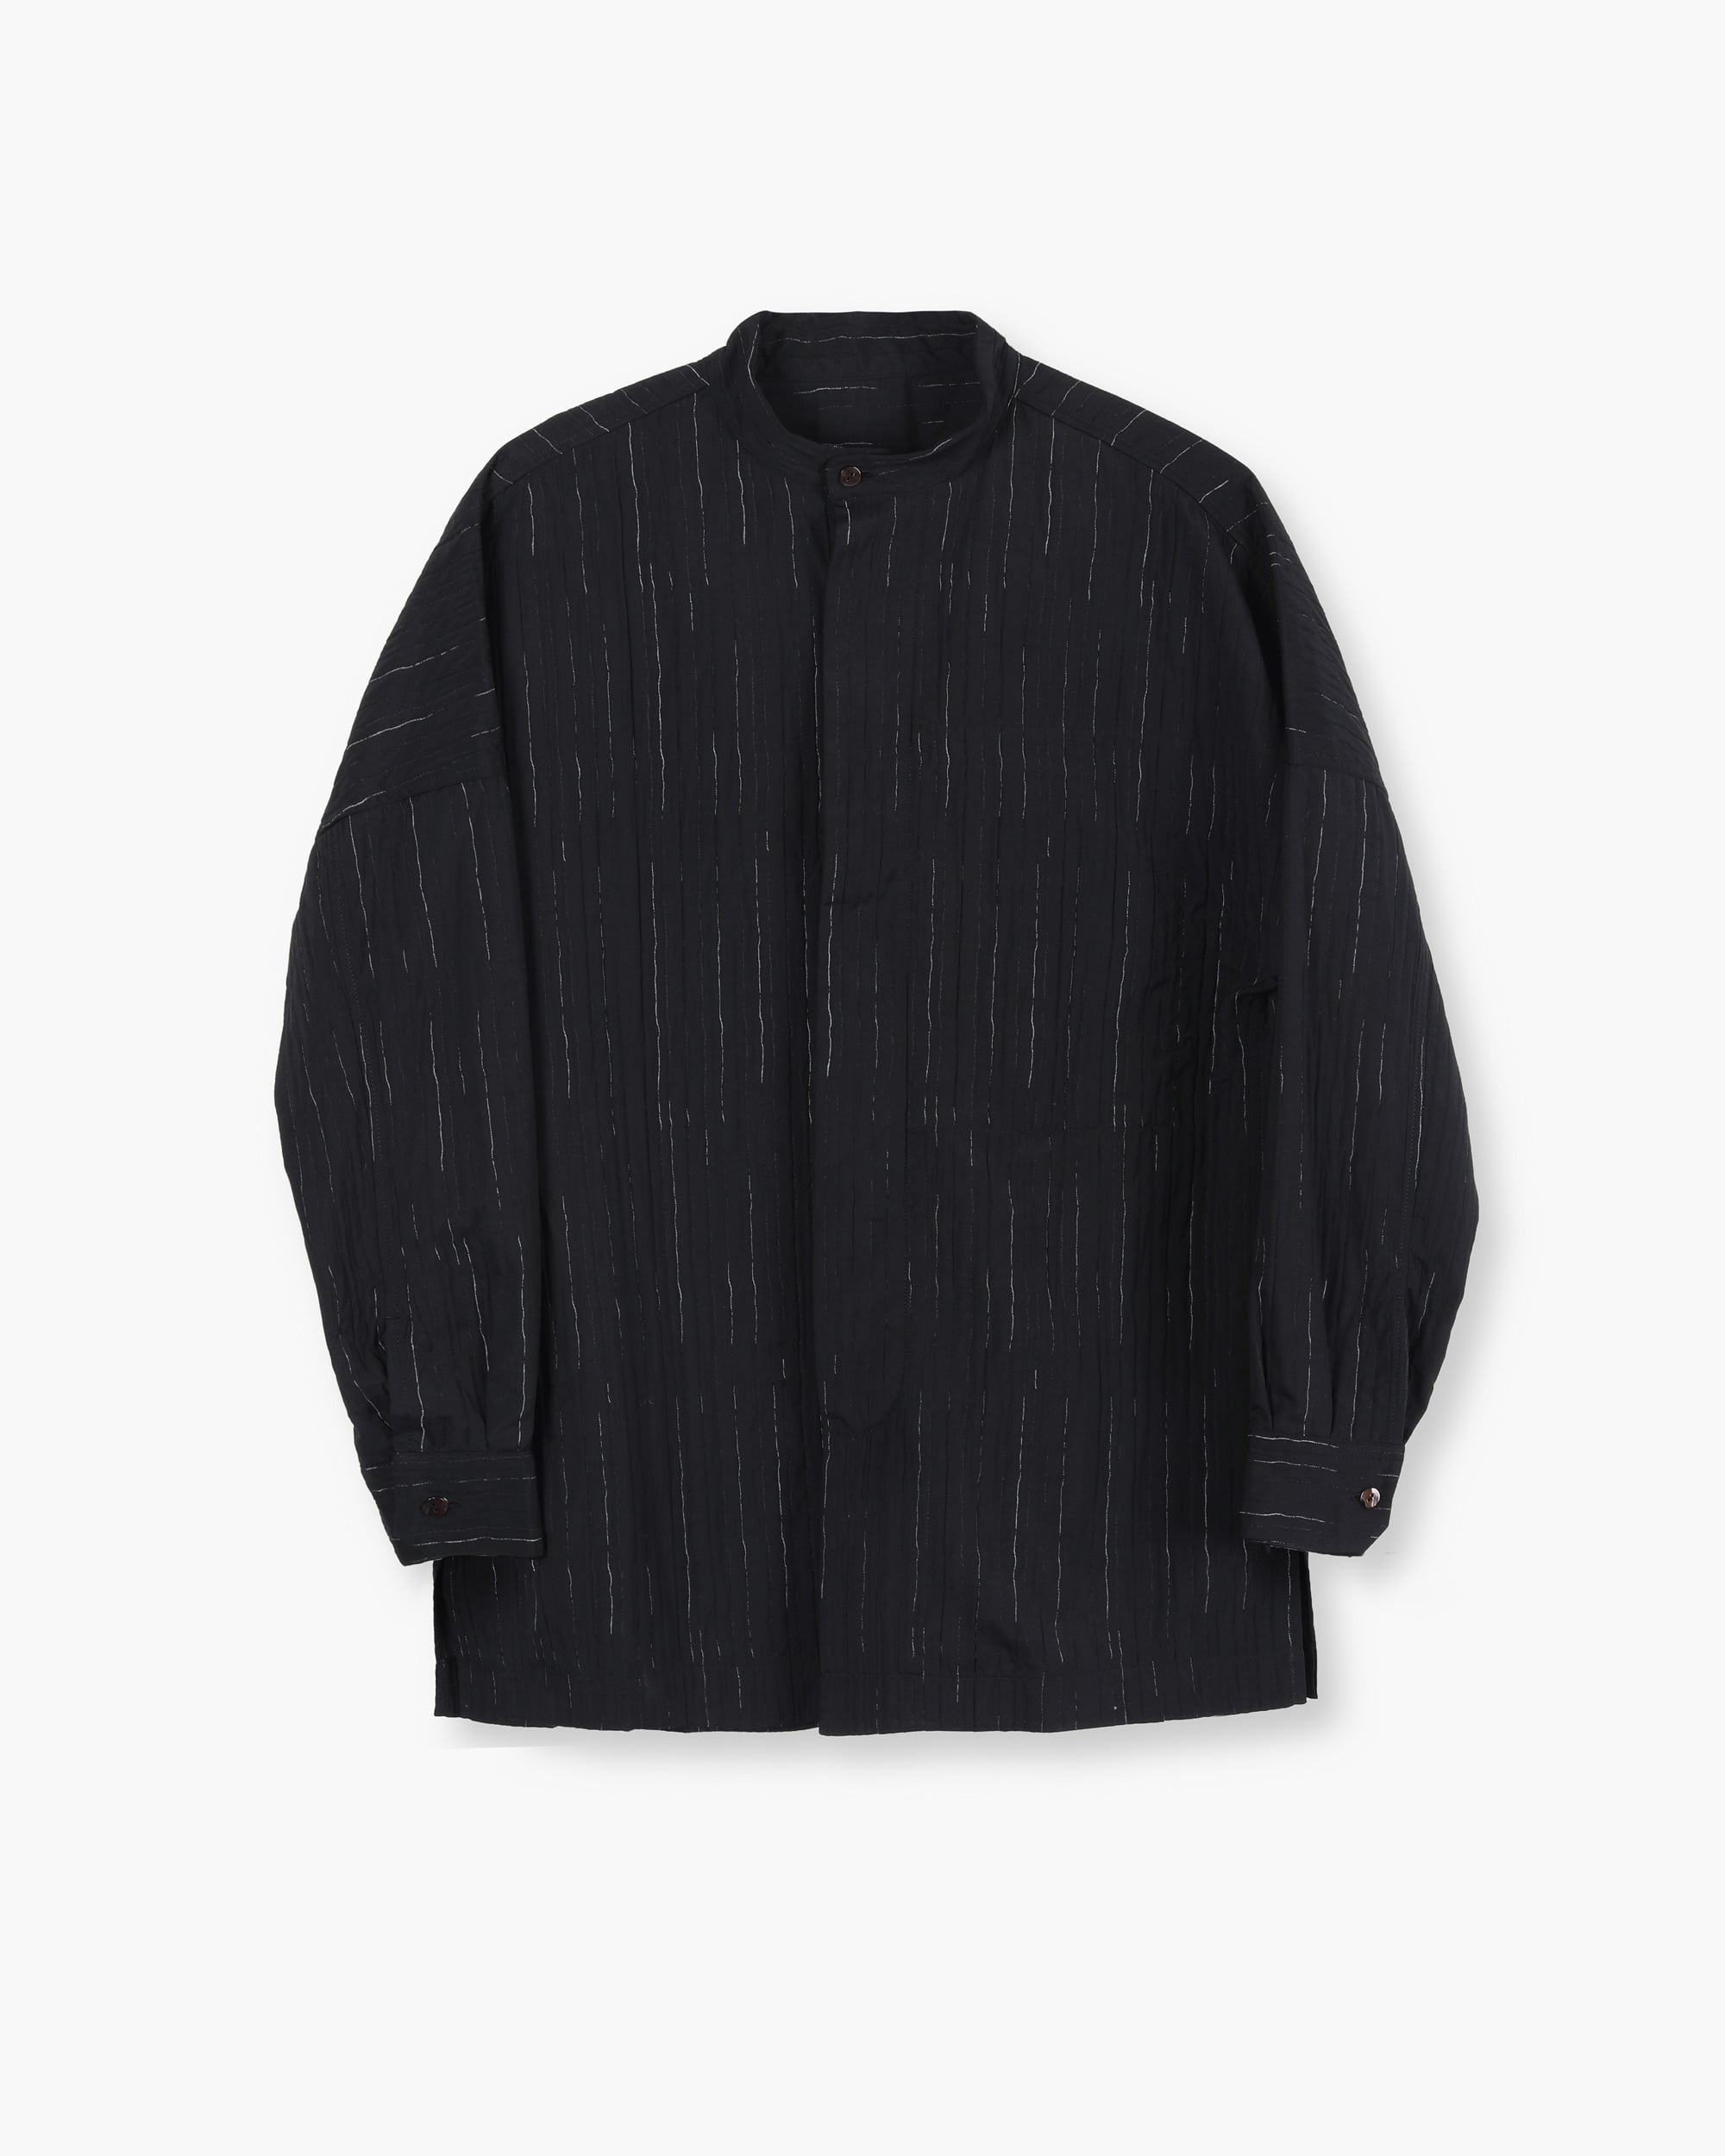 ROSEN Online Store, Soma Shirt, Pleated Cotton – ROSEN